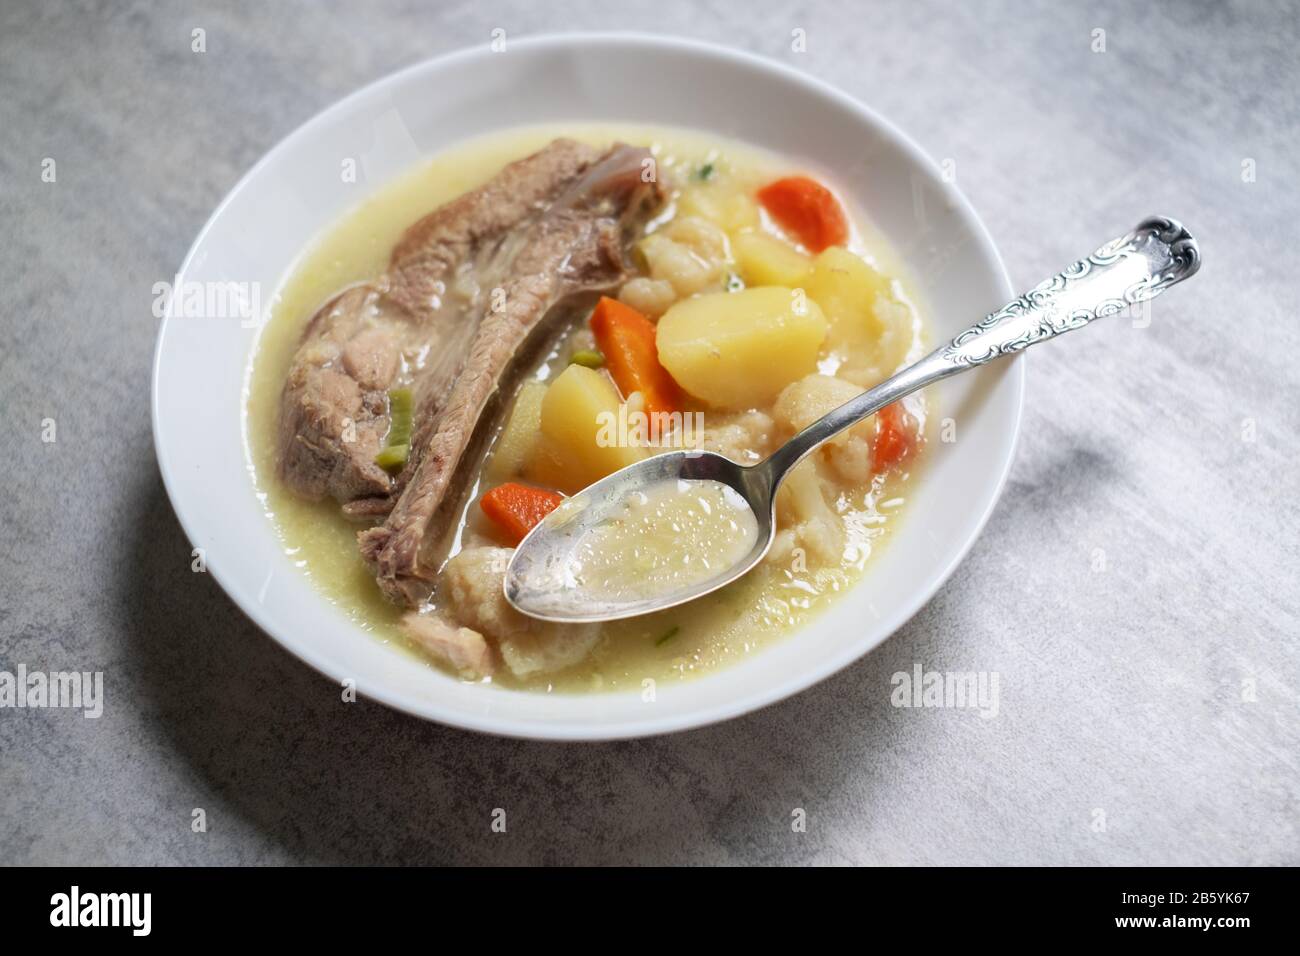 Zuppa con carne di patate e costolette di maiale. Fotografia di cibo Foto Stock